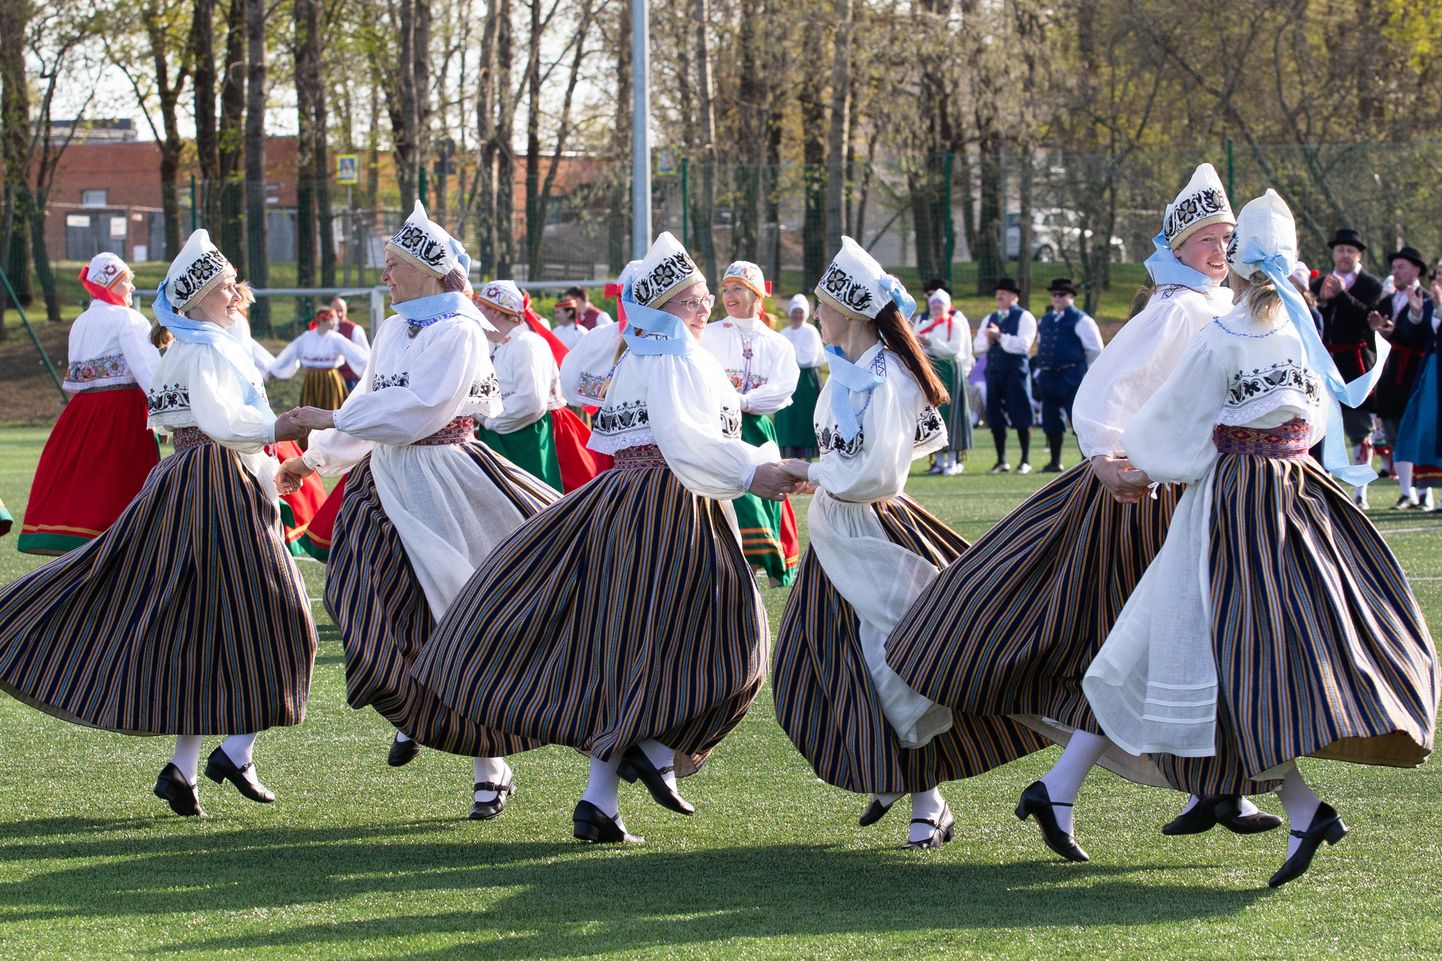 Уездный праздник танца нынче будет заменен концертом народного танца "Viru vöökiri", в котором поучаствуют 8 смешанных групп, 12 женских групп и 8 групп бабушек.